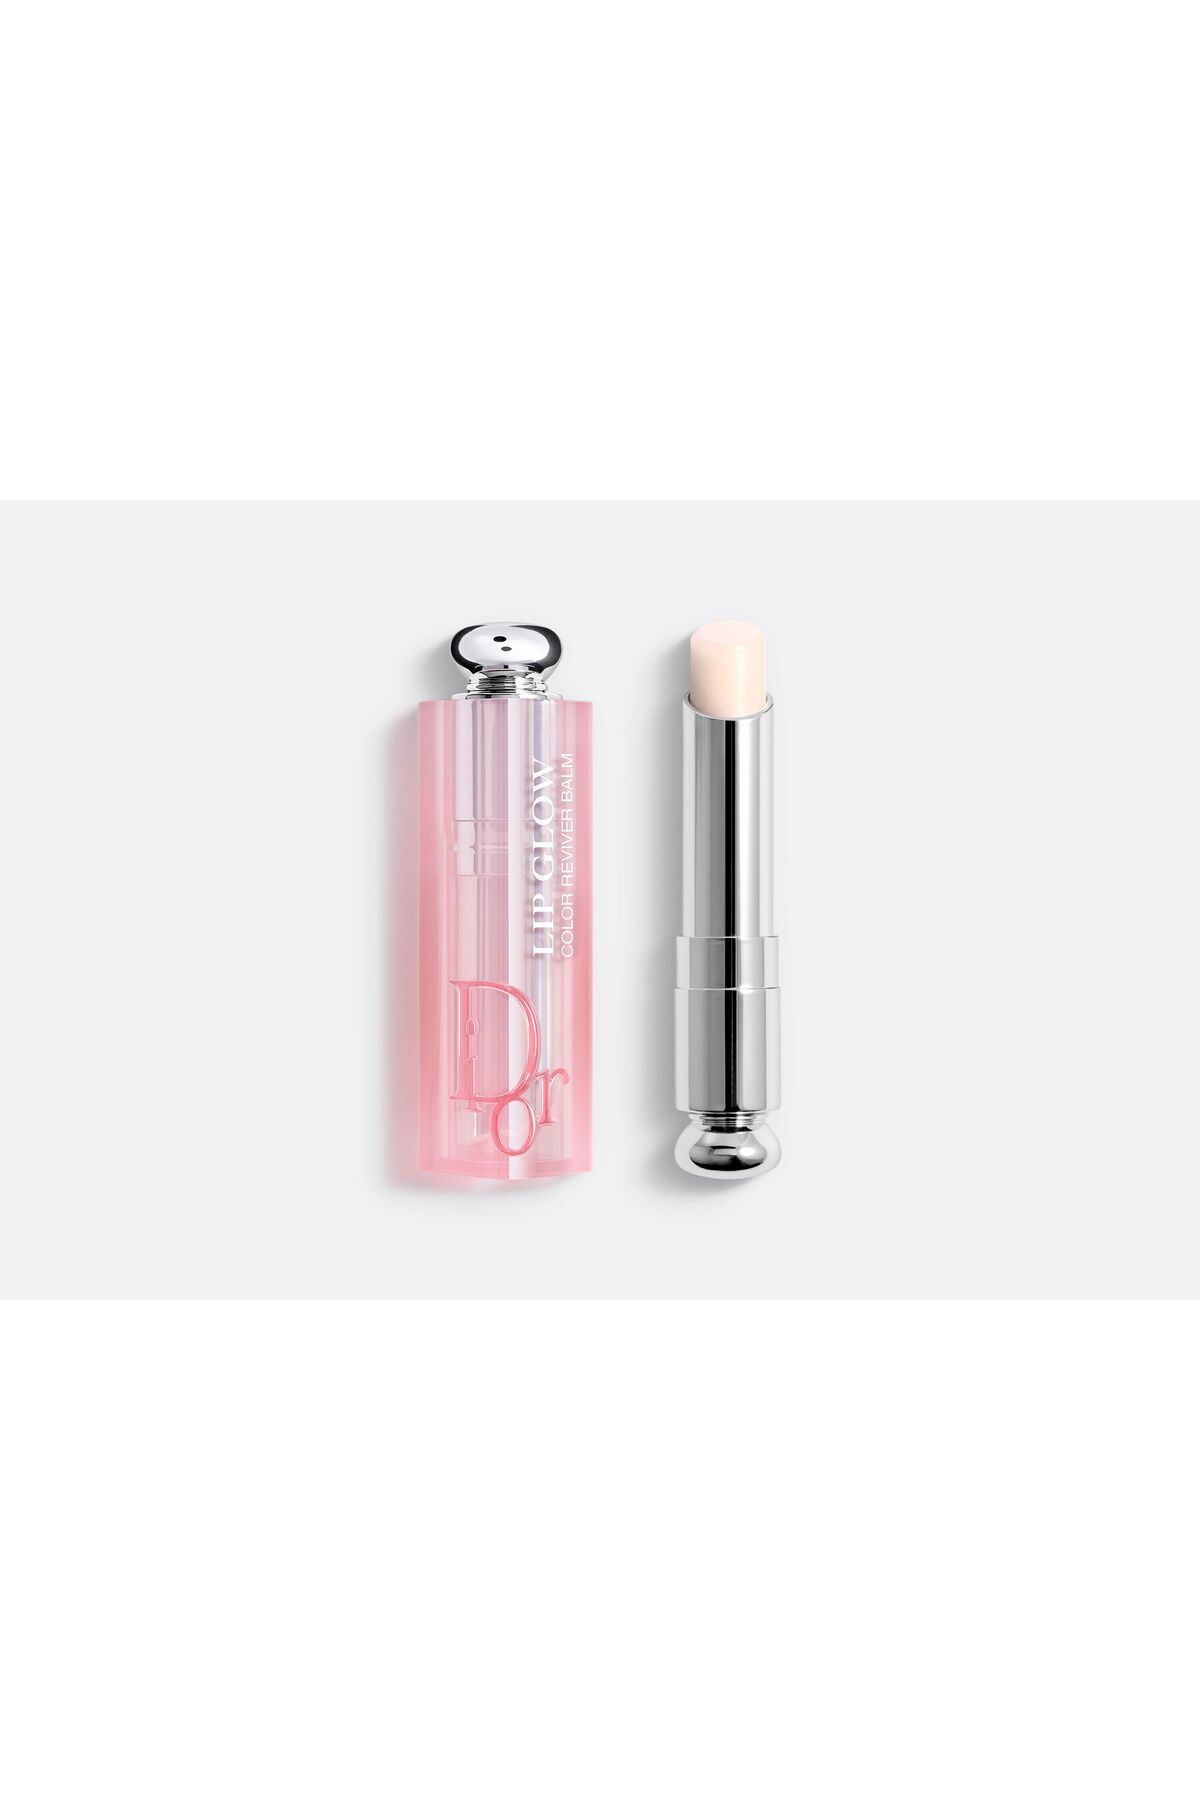 Dior Addict Lip Glow - Kiraz Yağ İçerikli 24 Boyunca Etkili Nemlendirici Pürüzsüzleştirici